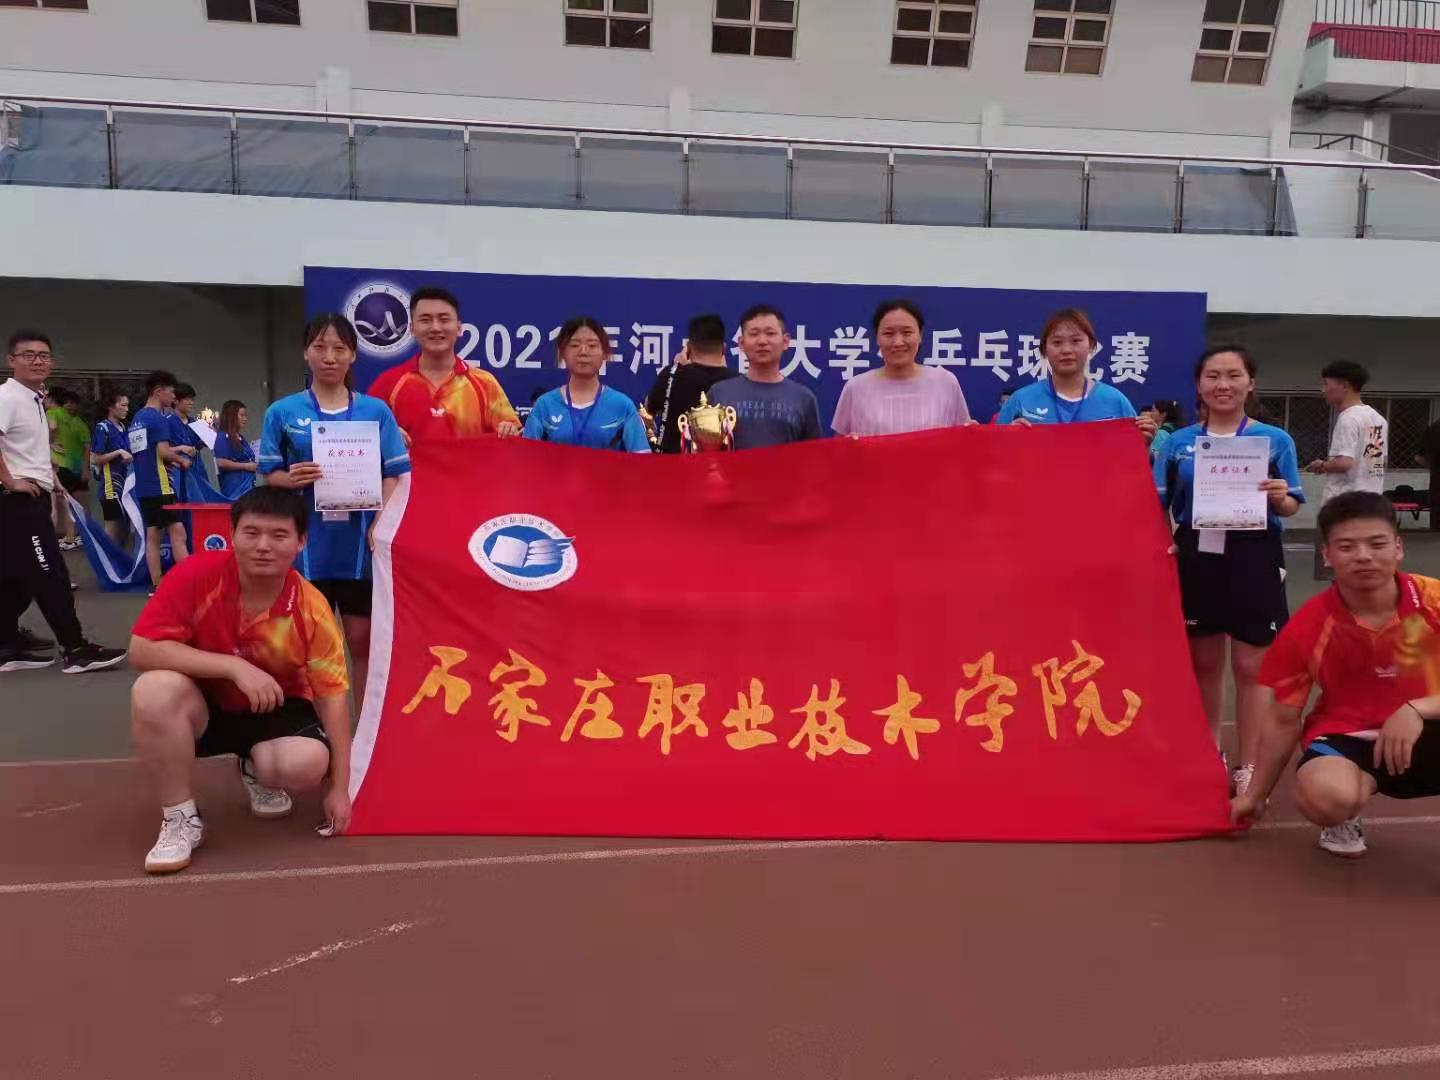 我院代表队参加河北省大学生乒乓球比赛取得佳绩。